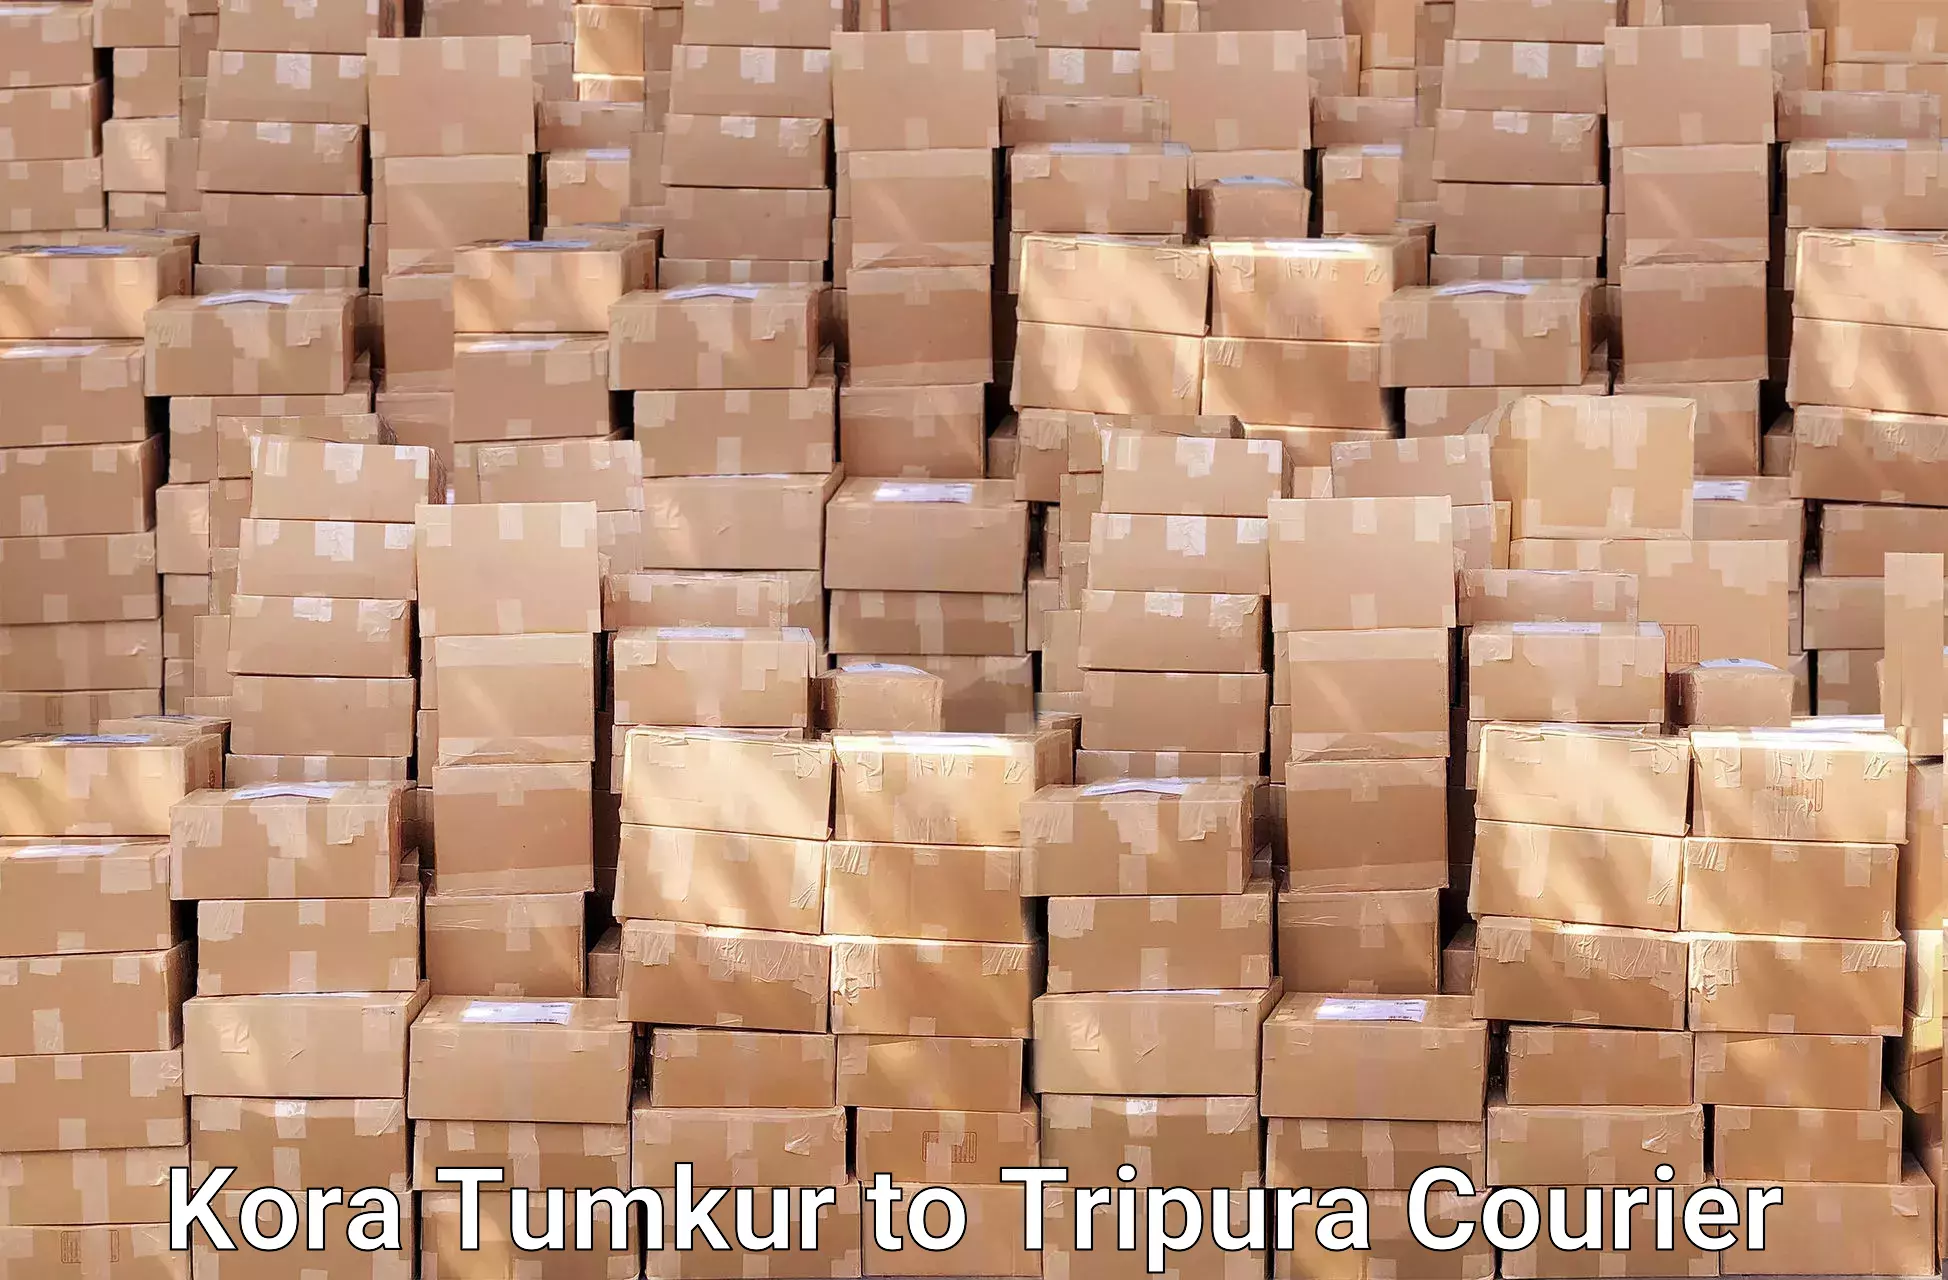 Skilled furniture transport in Kora Tumkur to Tripura